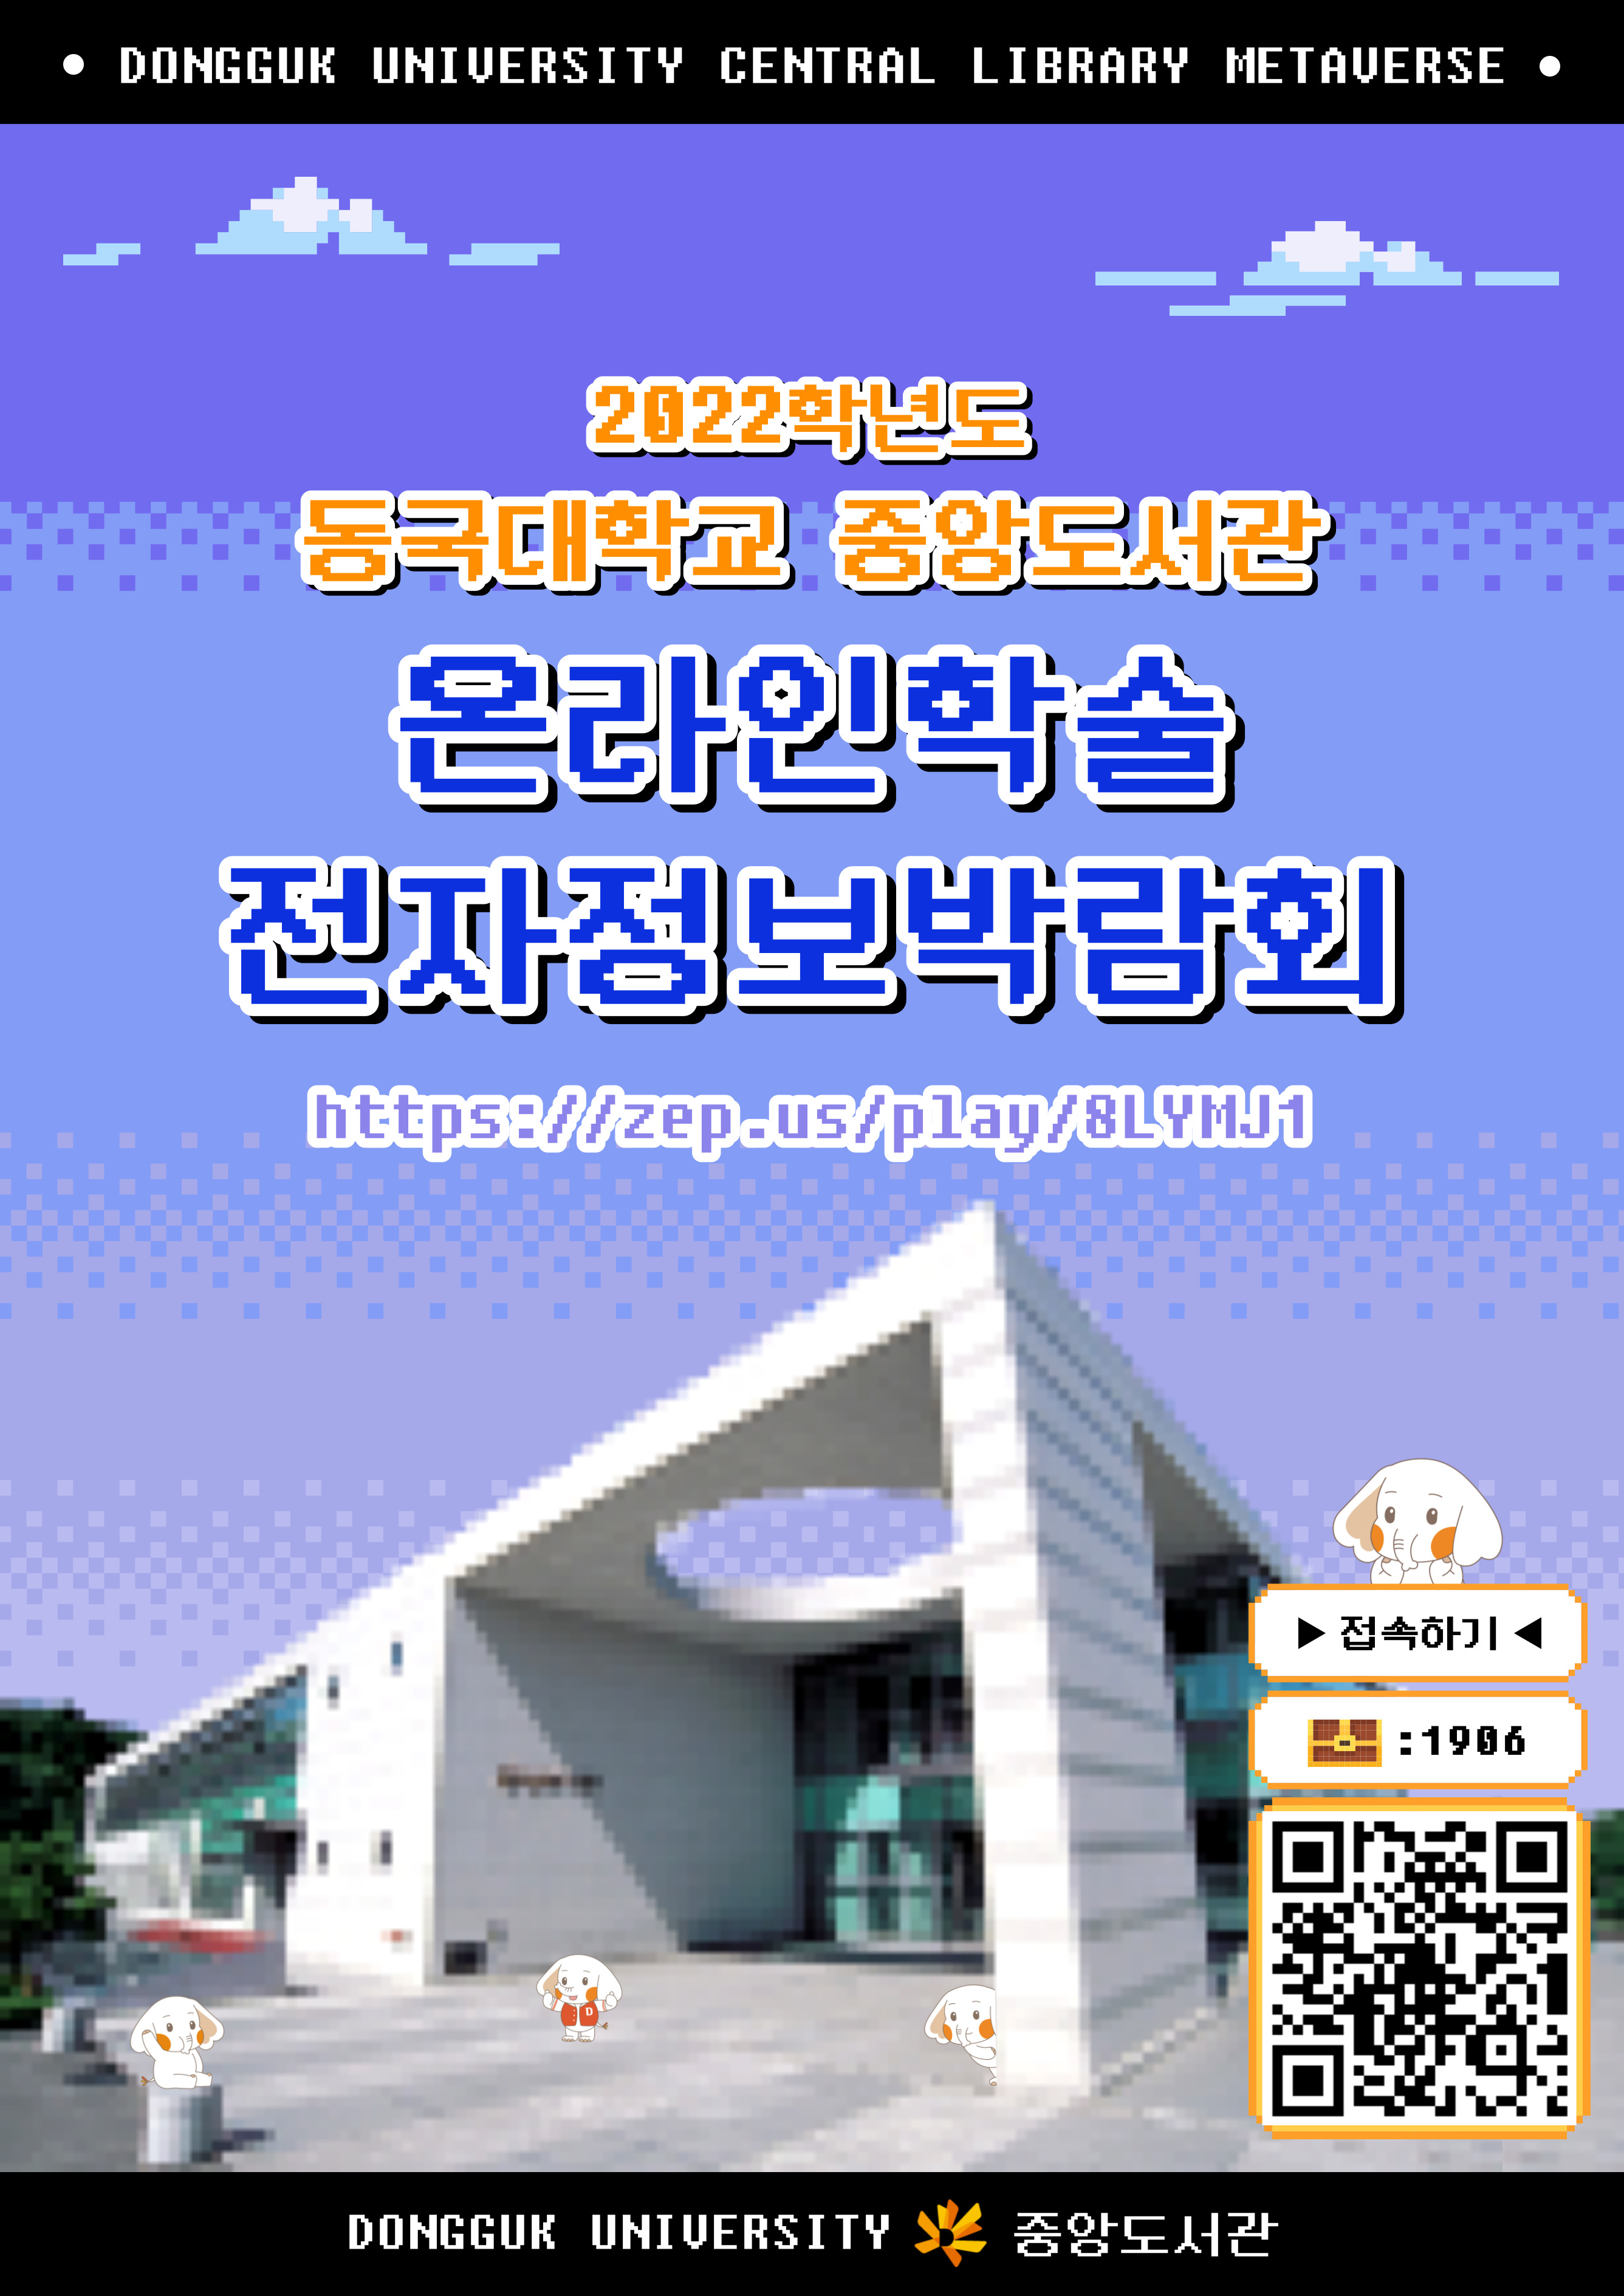 온라인 학술 전자정보박람회 개최